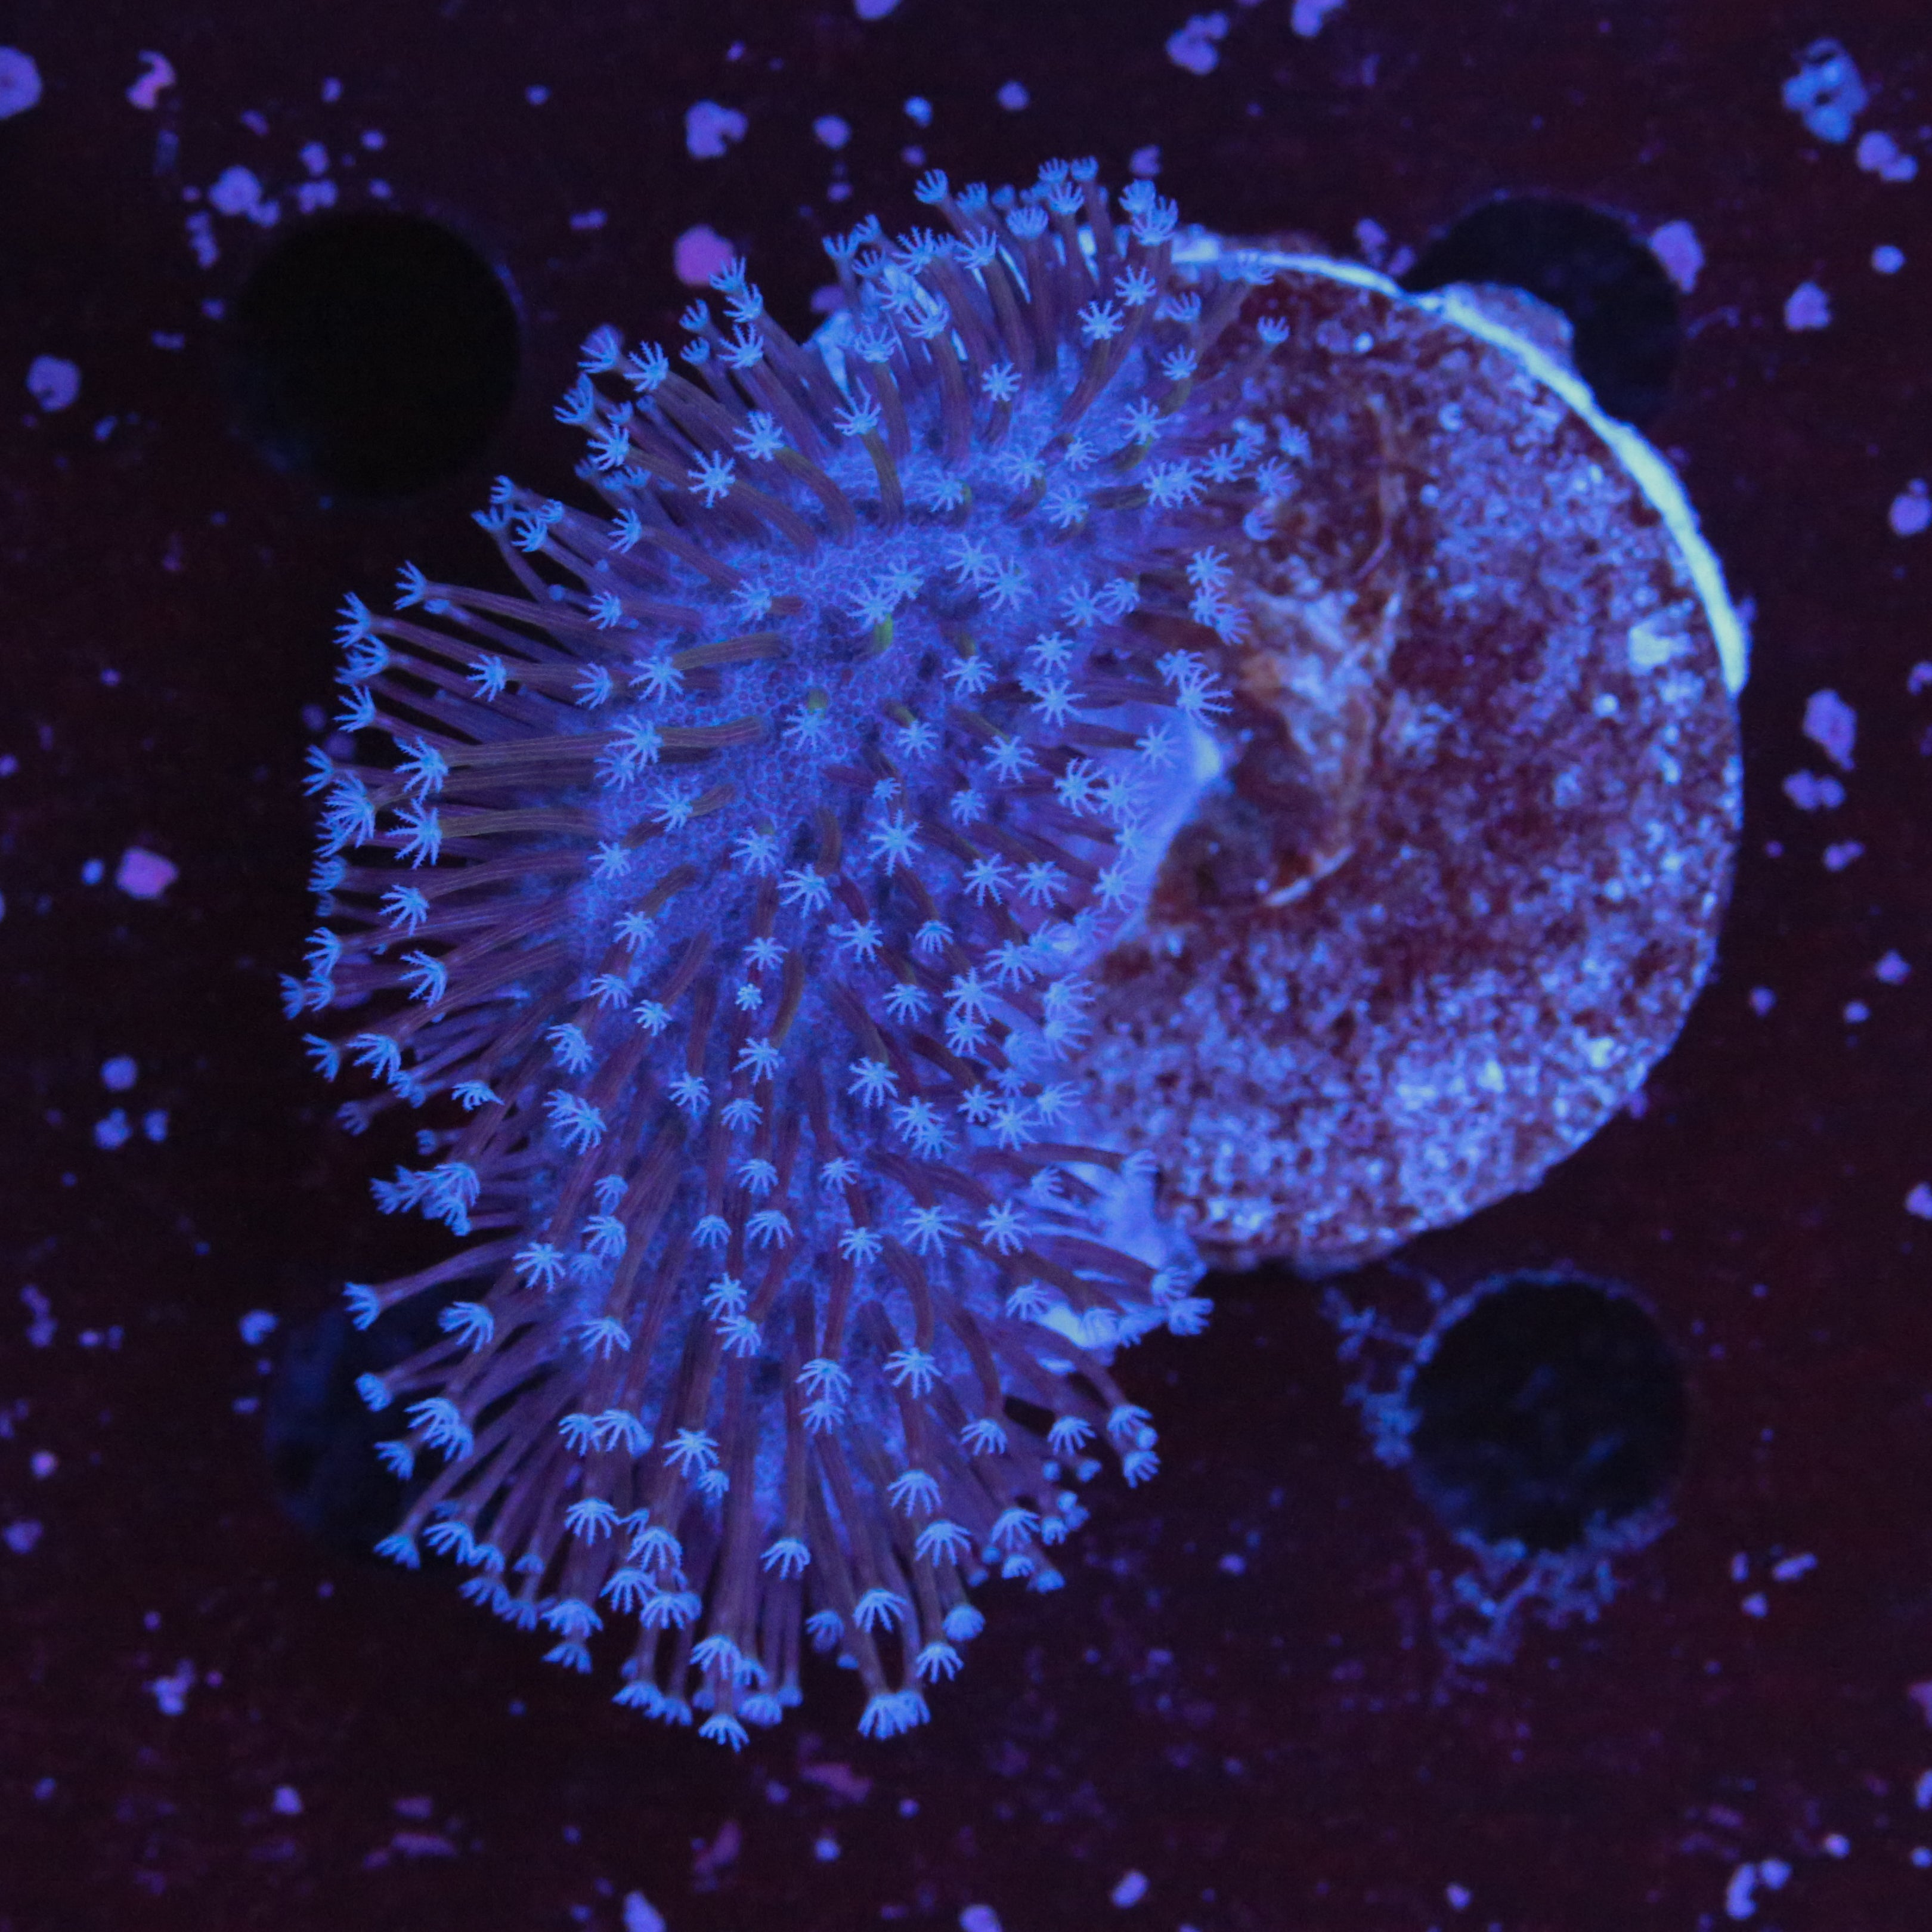 Pilzleder Koralle Weisse Polypen